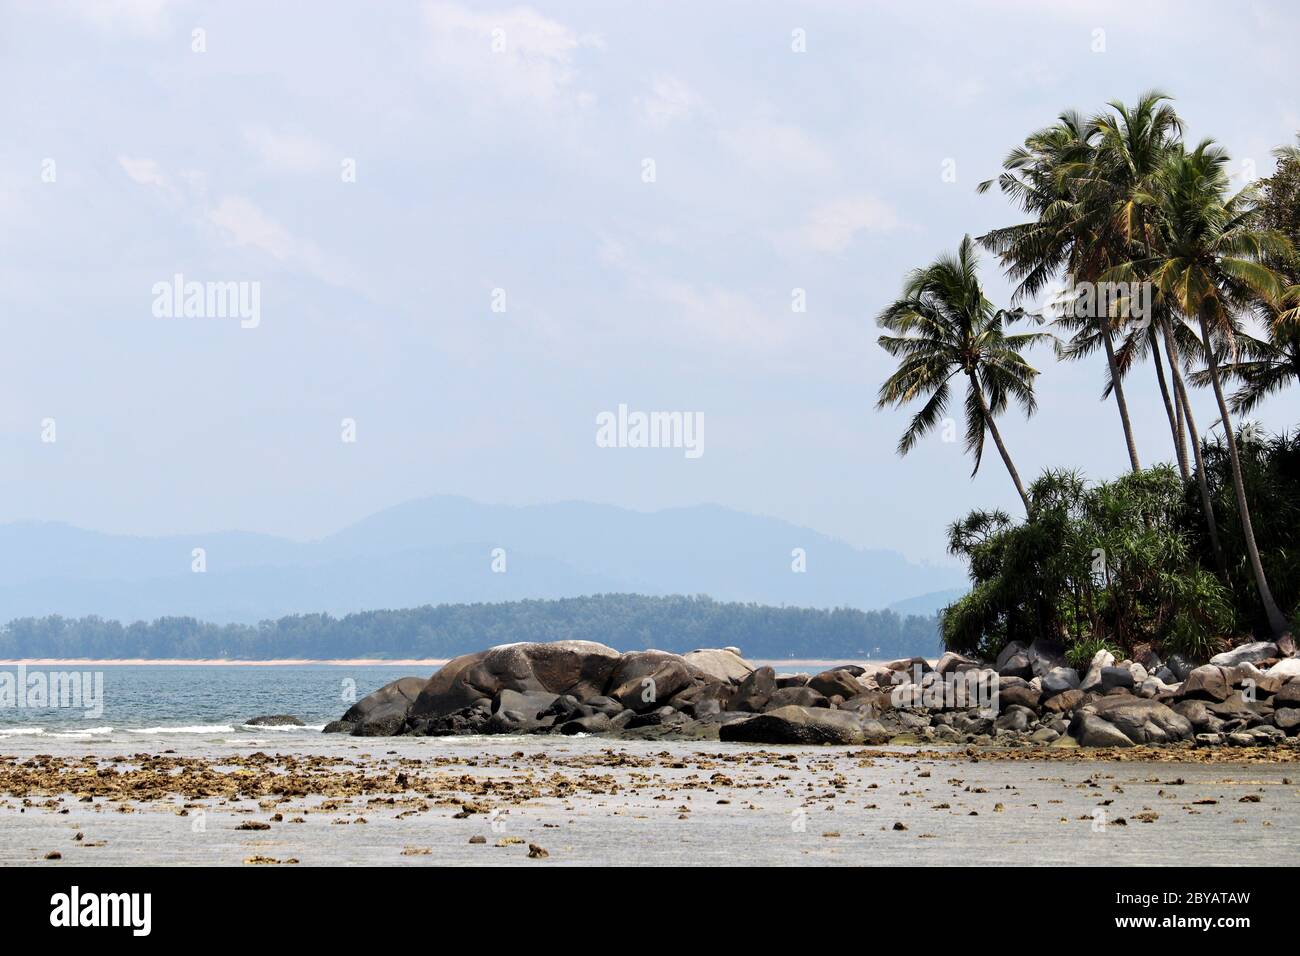 Isola tropicale con palme da cocco in un oceano, spiaggia con rocce, vista pittoresca sulle montagne nella nebbia. Concetto di vacanza in paradiso natura Foto Stock